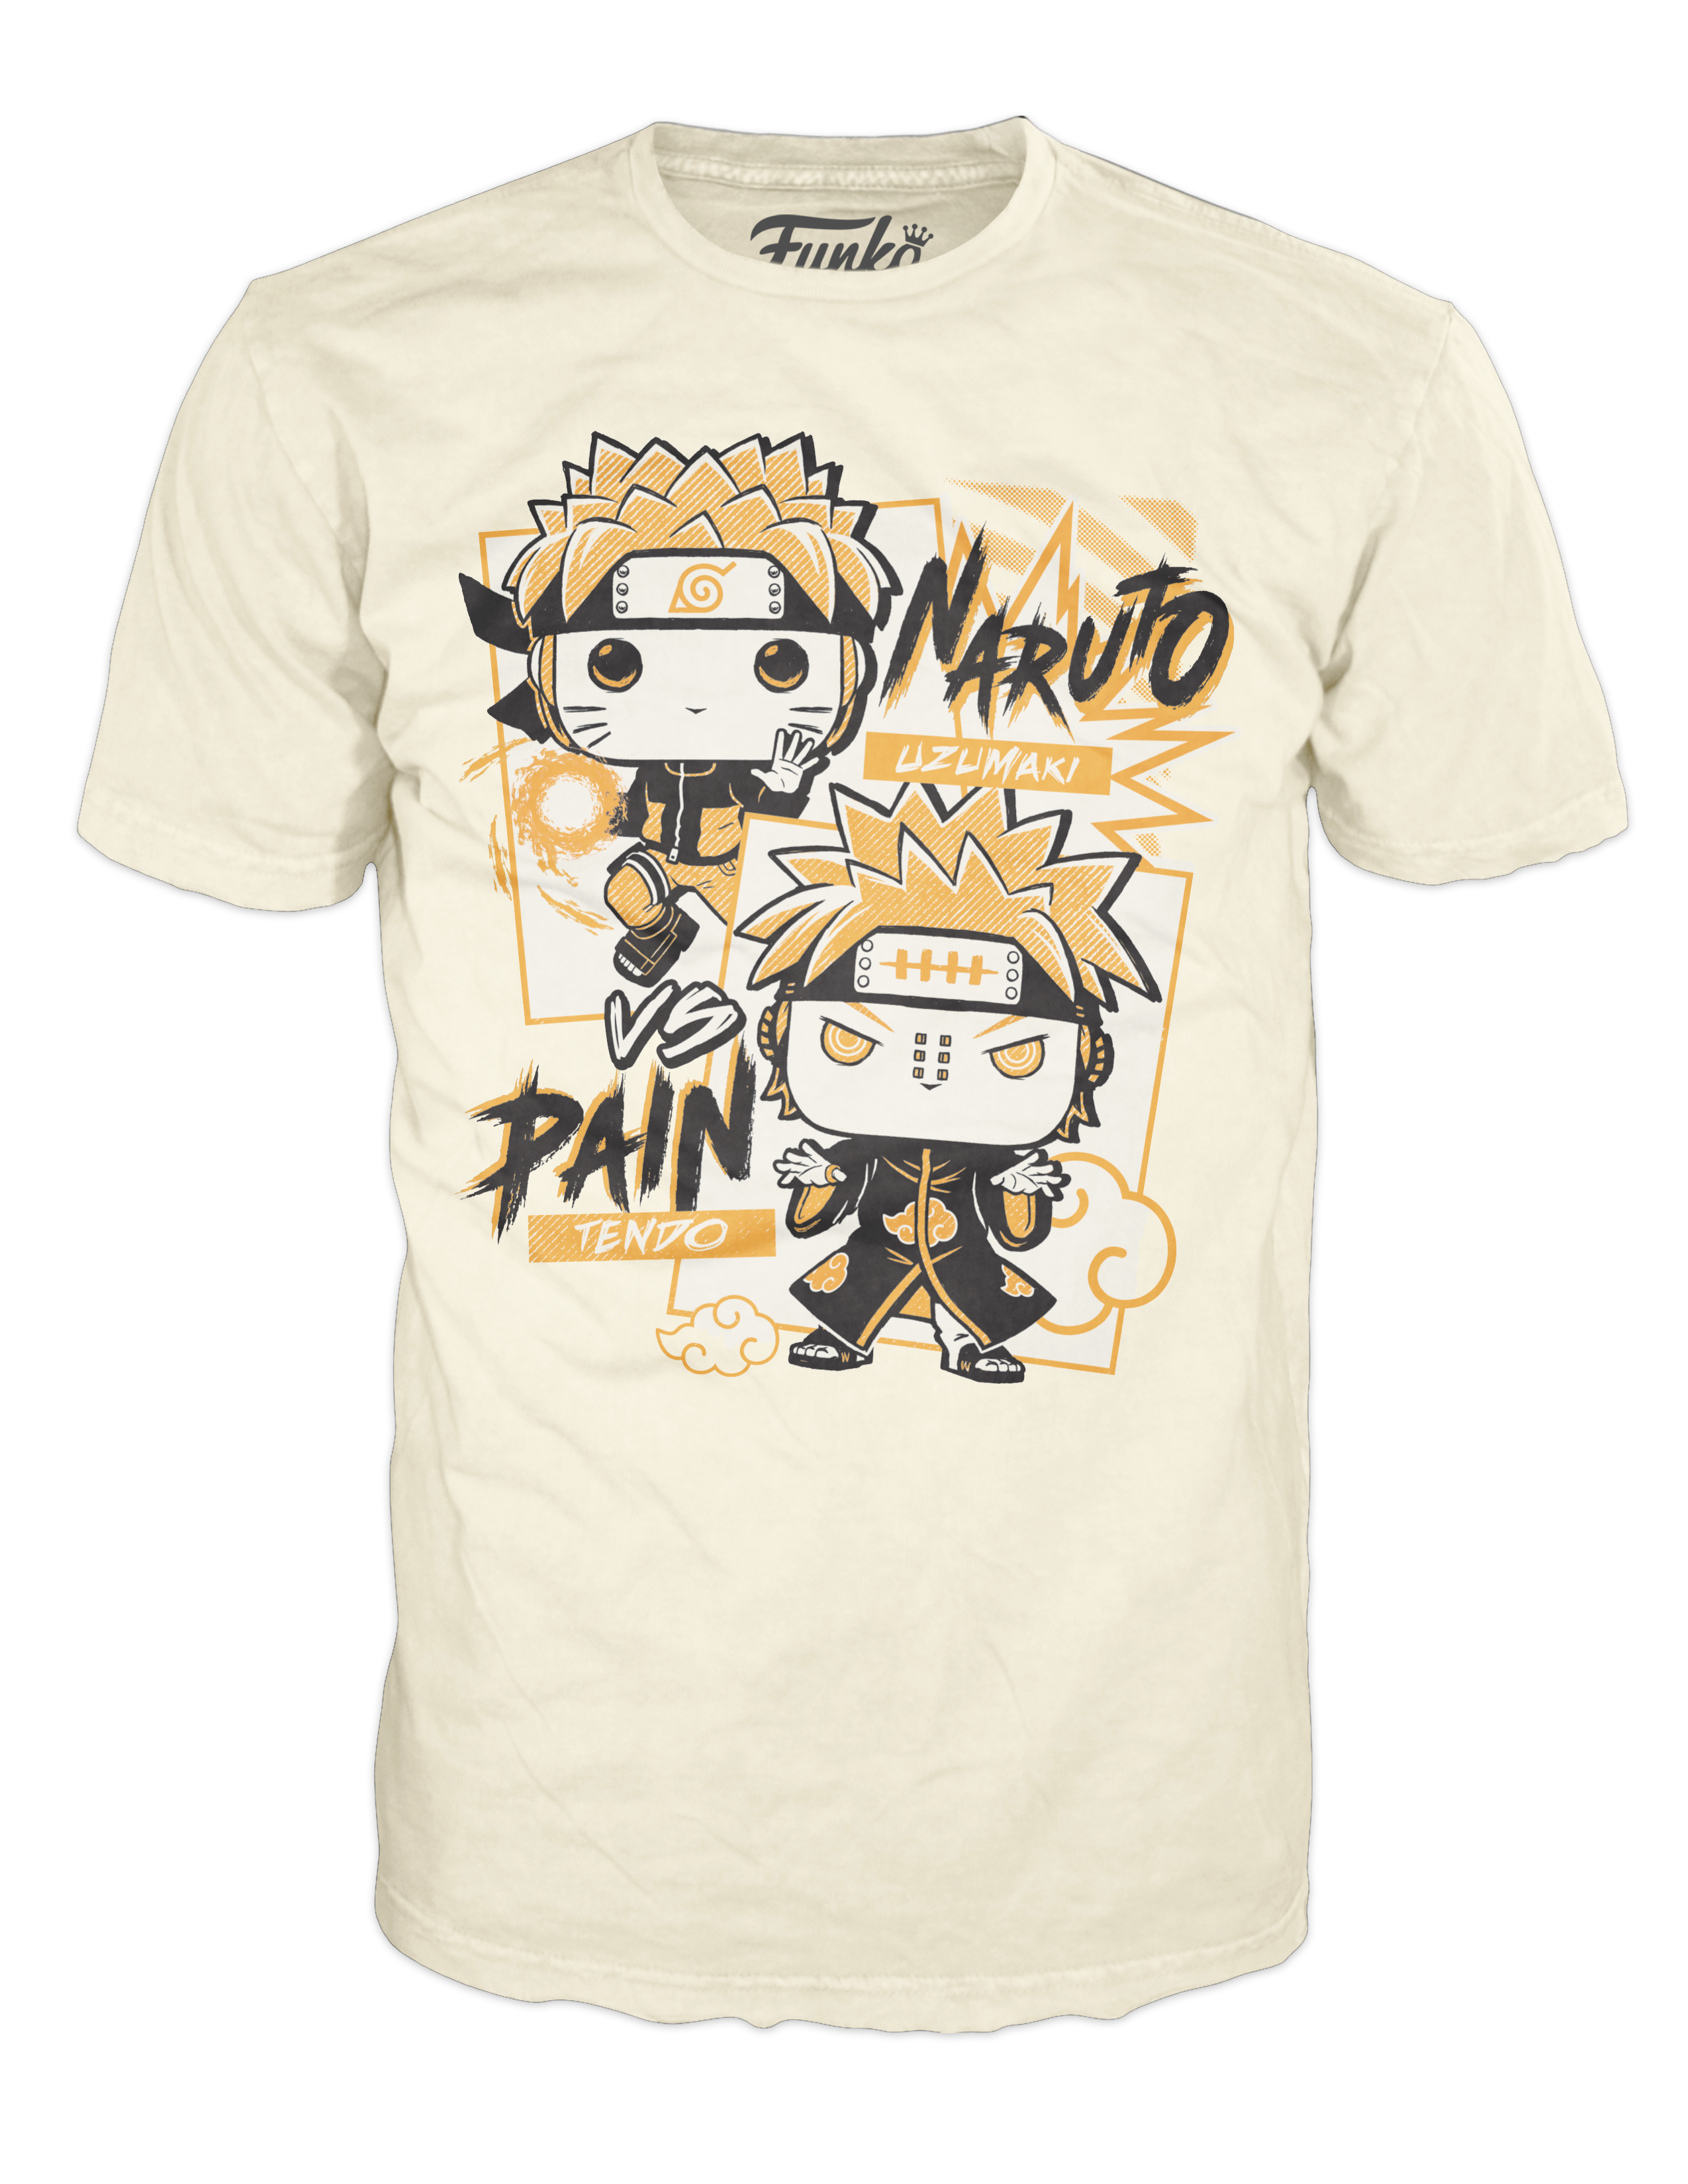 Naruto: Shippuden Pain vs. Naruto Funko Pop! Moment #1433